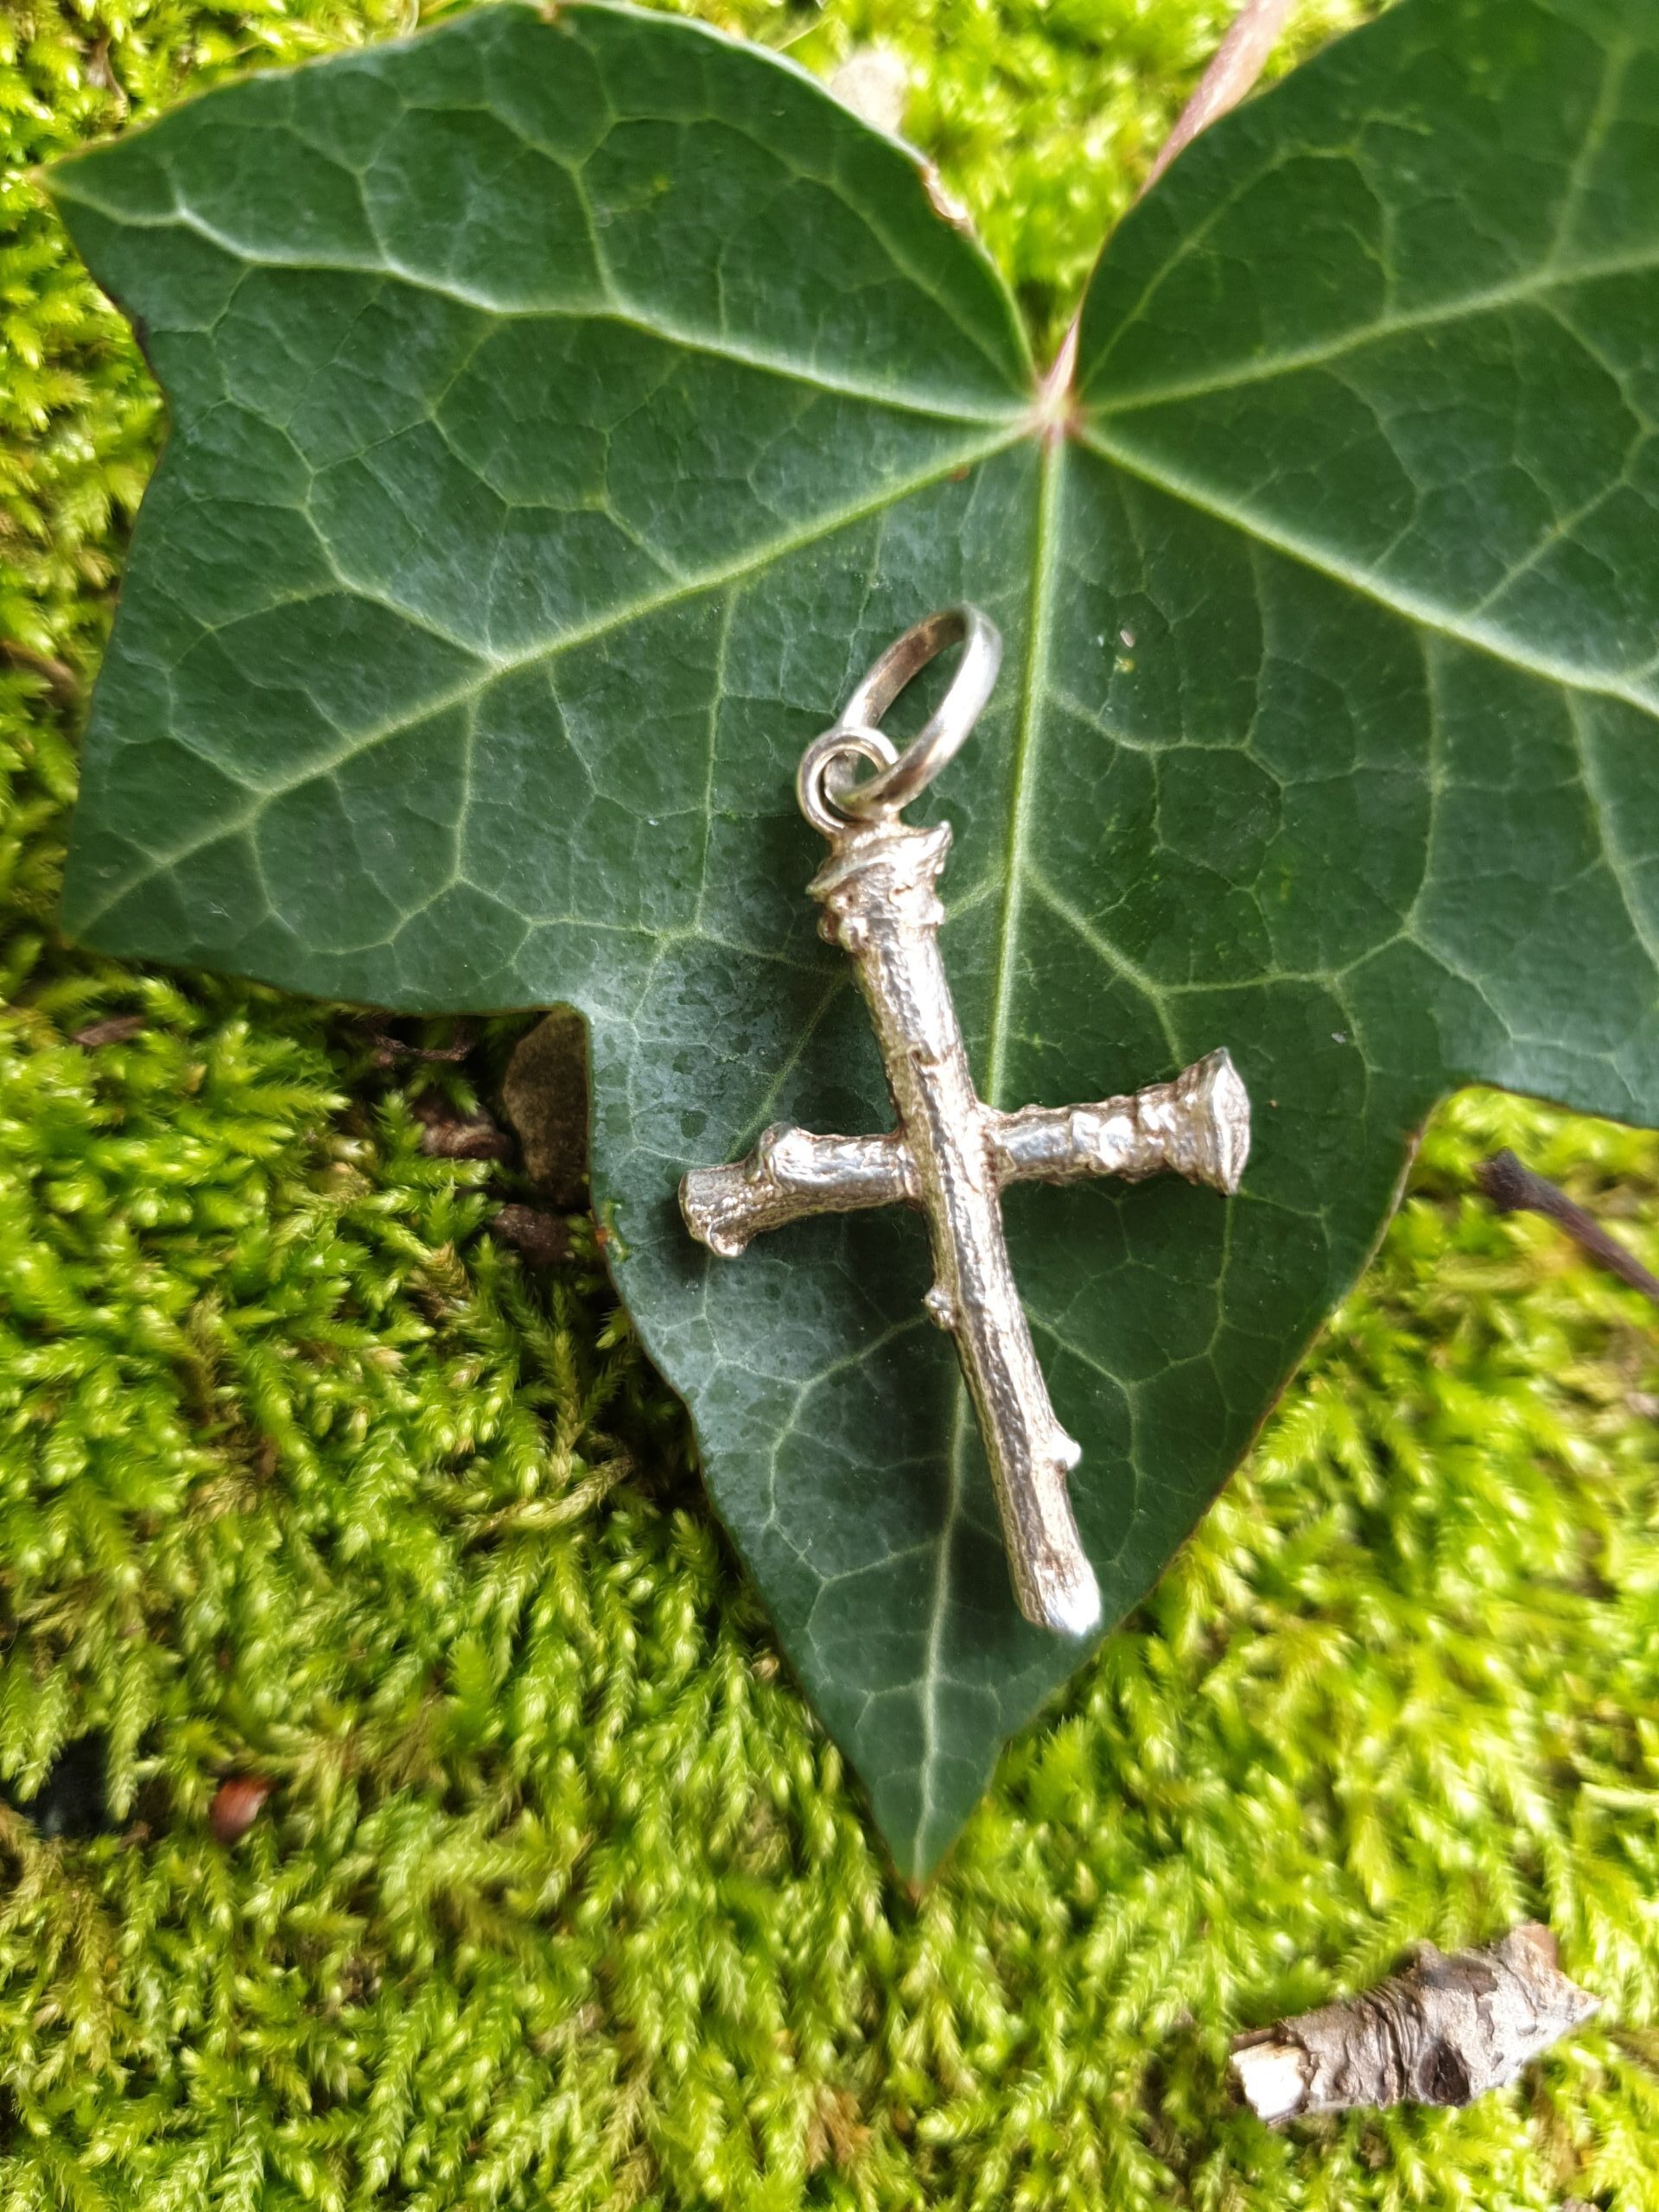 Croce in argento della collezione “Croci di Legno”